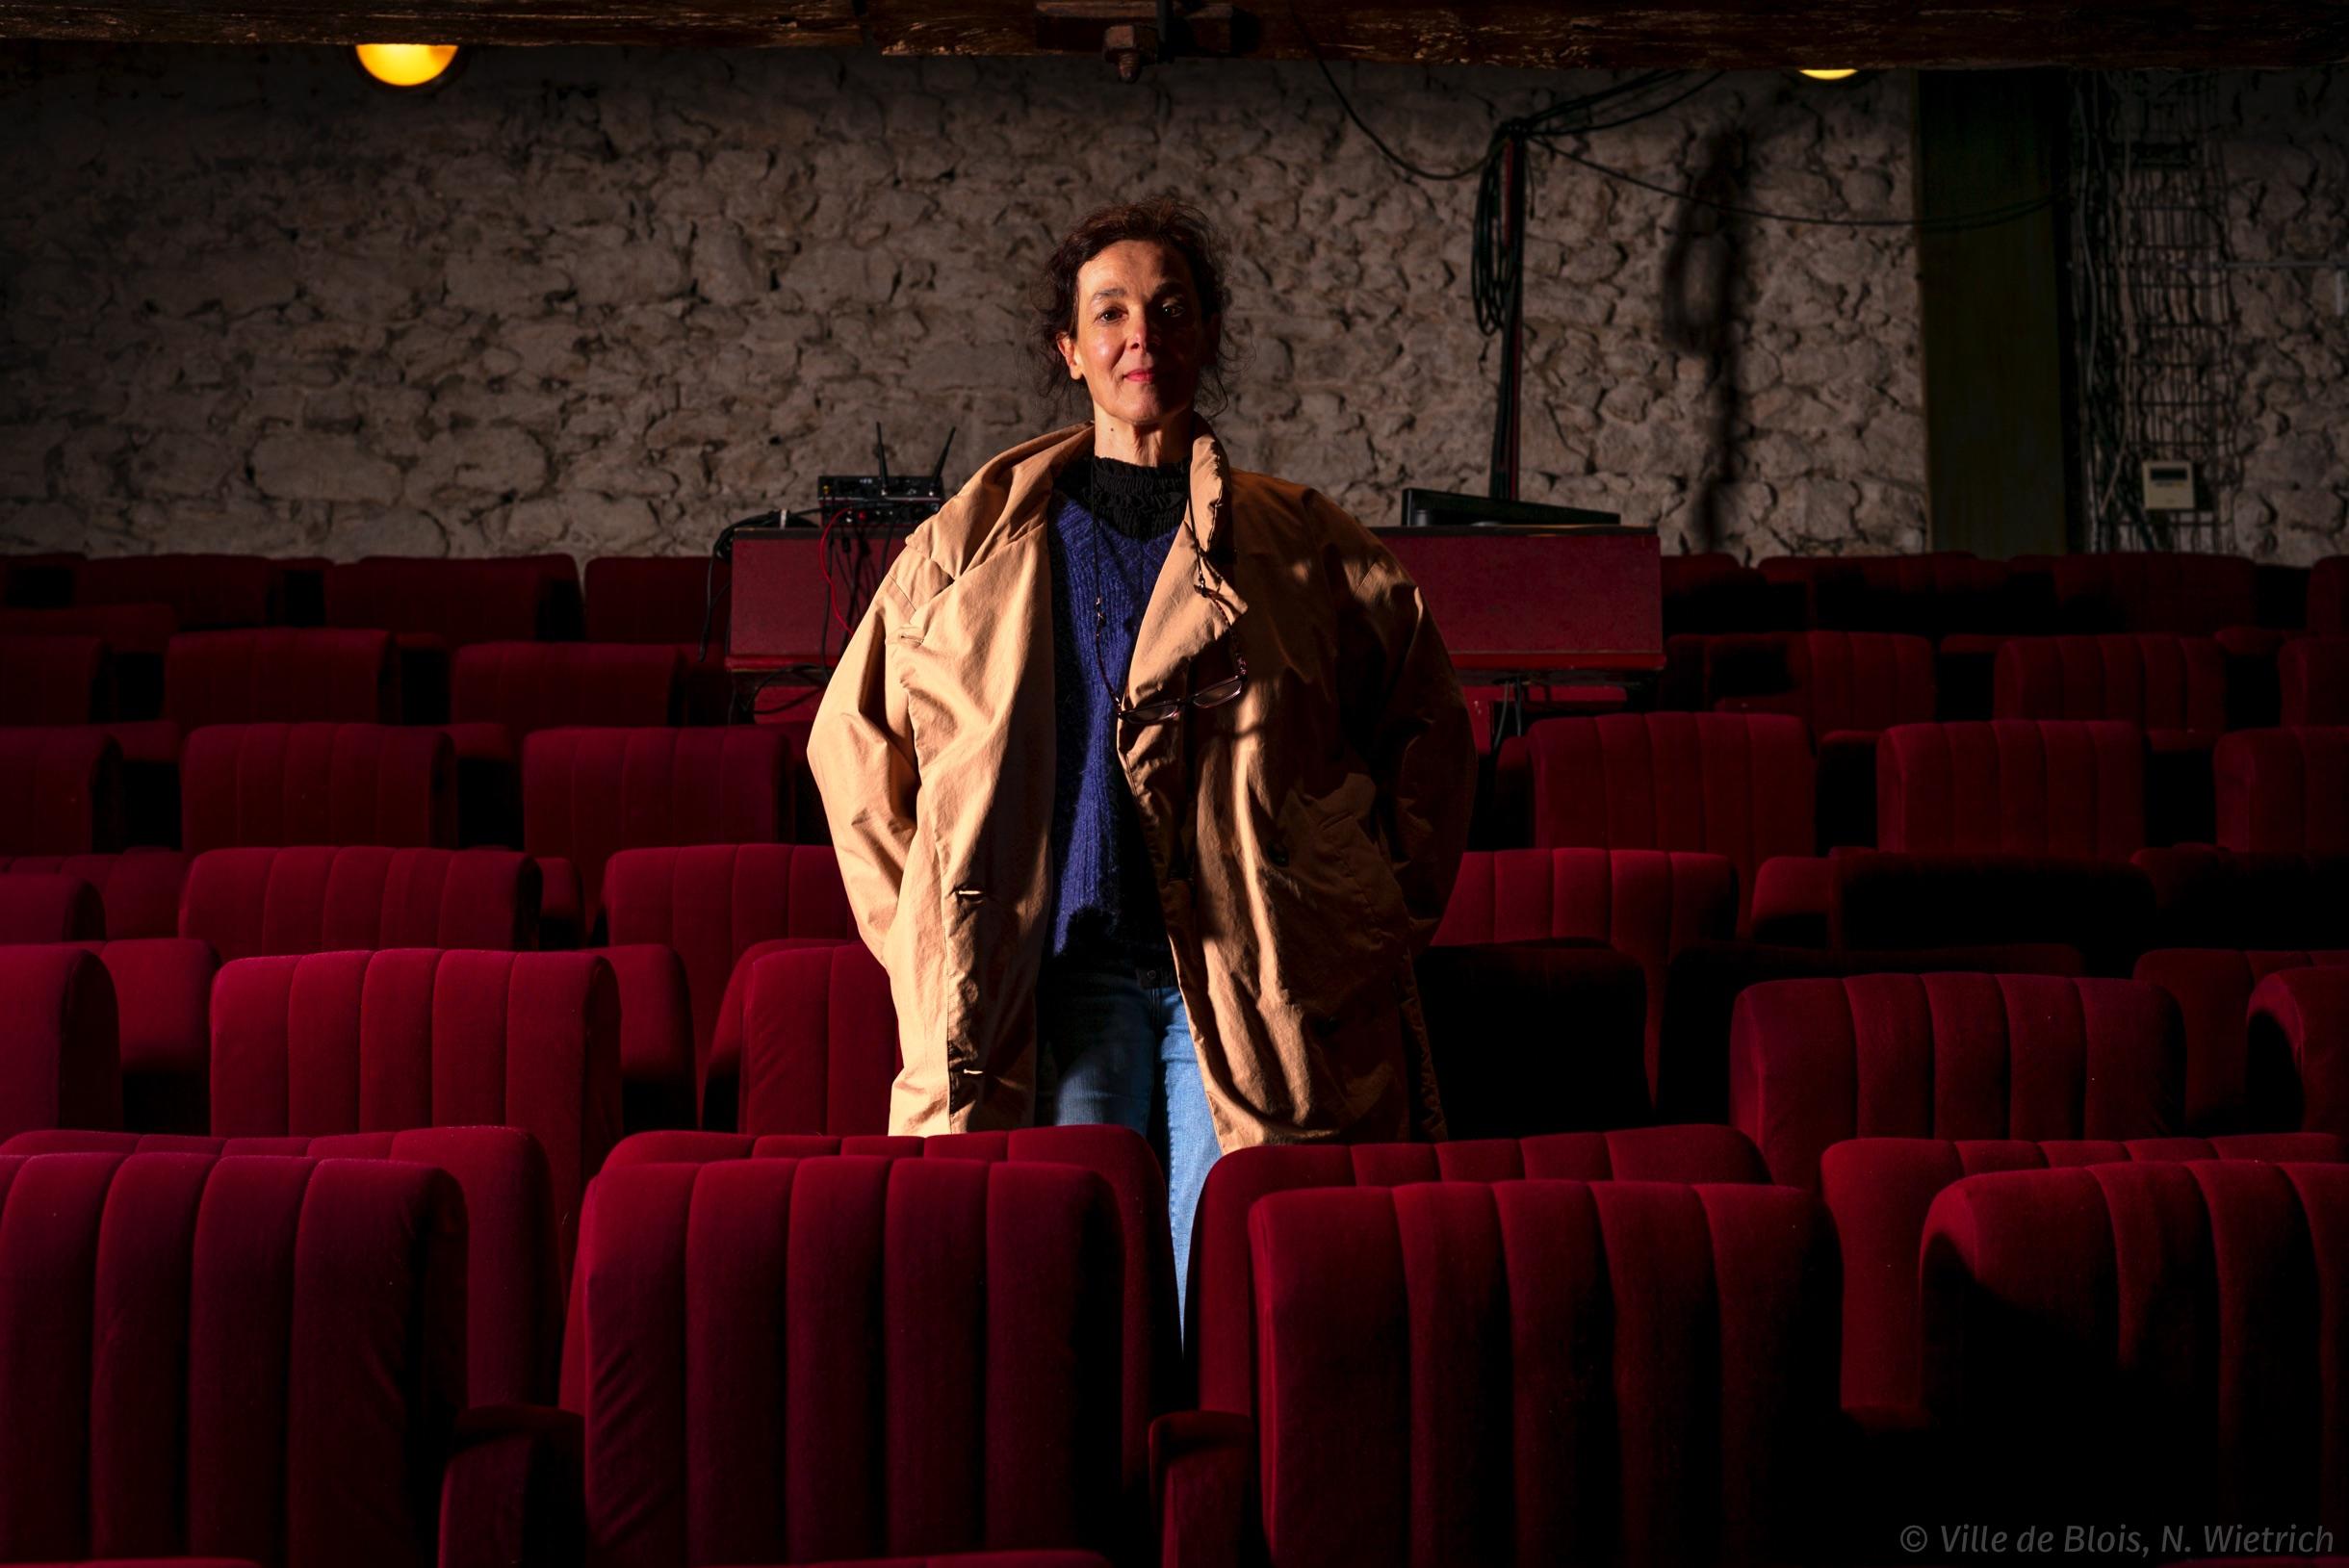 Portrait de Danièle Marty, au milieu de sièges de théâtre vides.